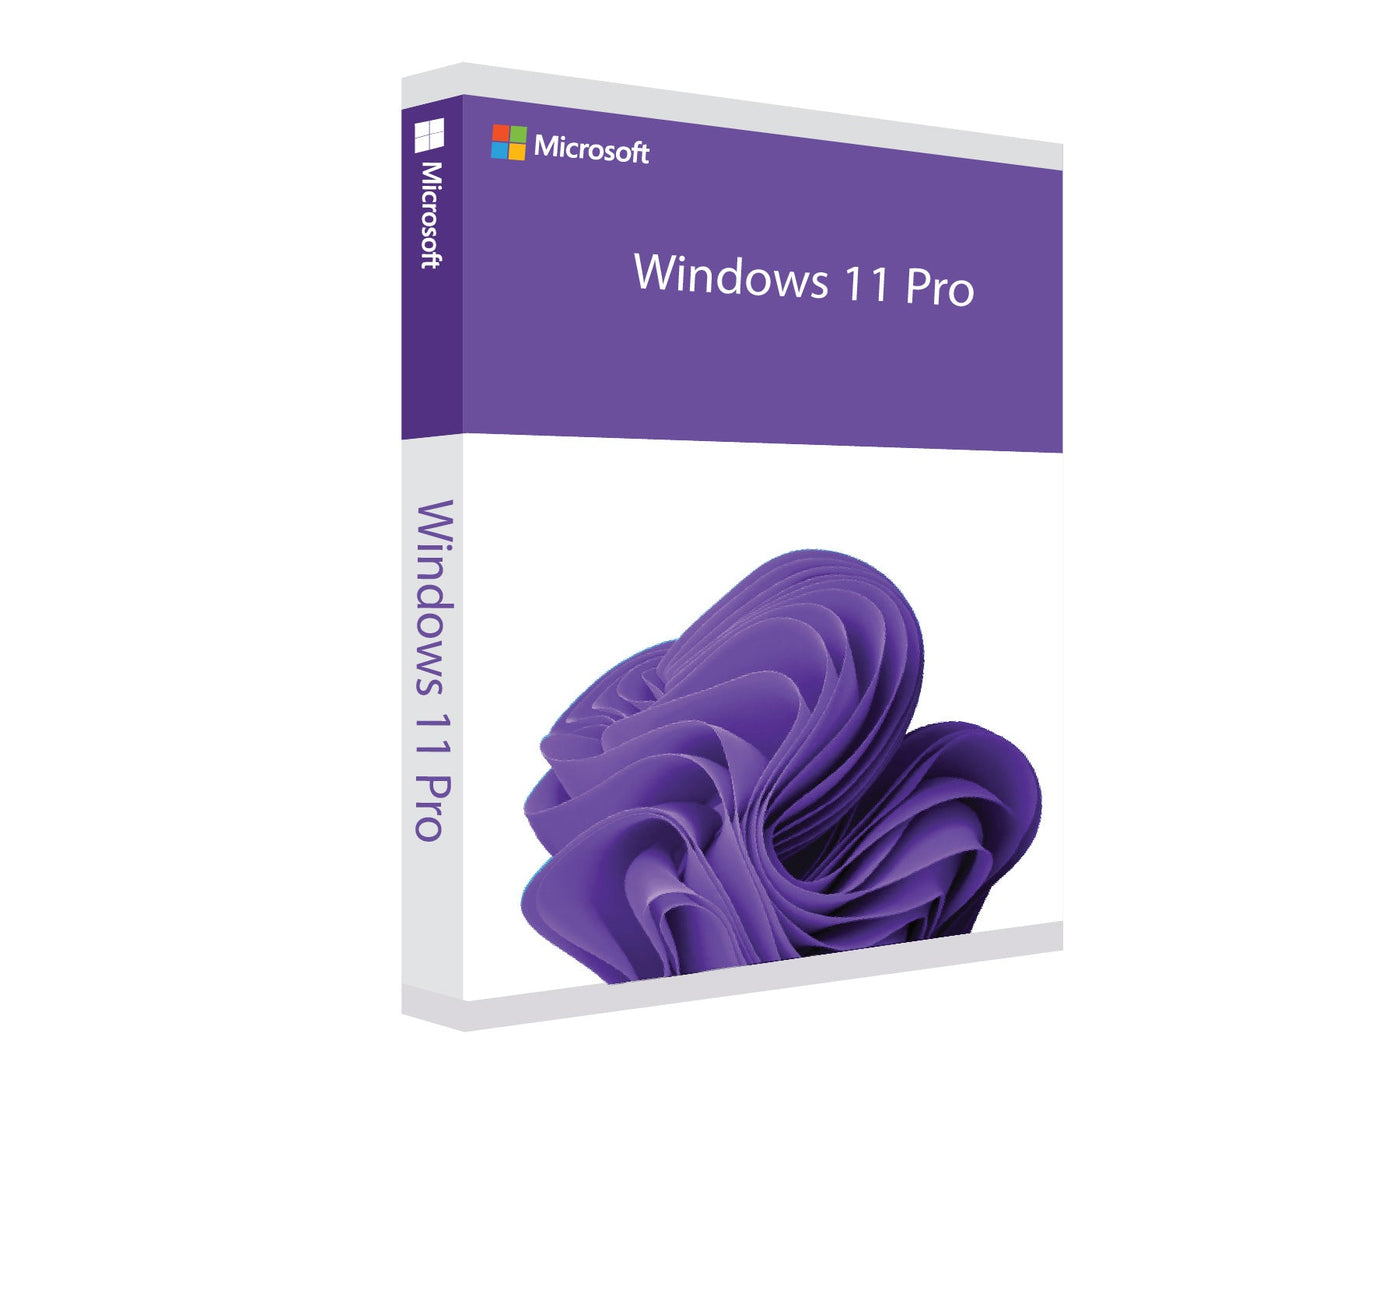 #Windows 11 Pro